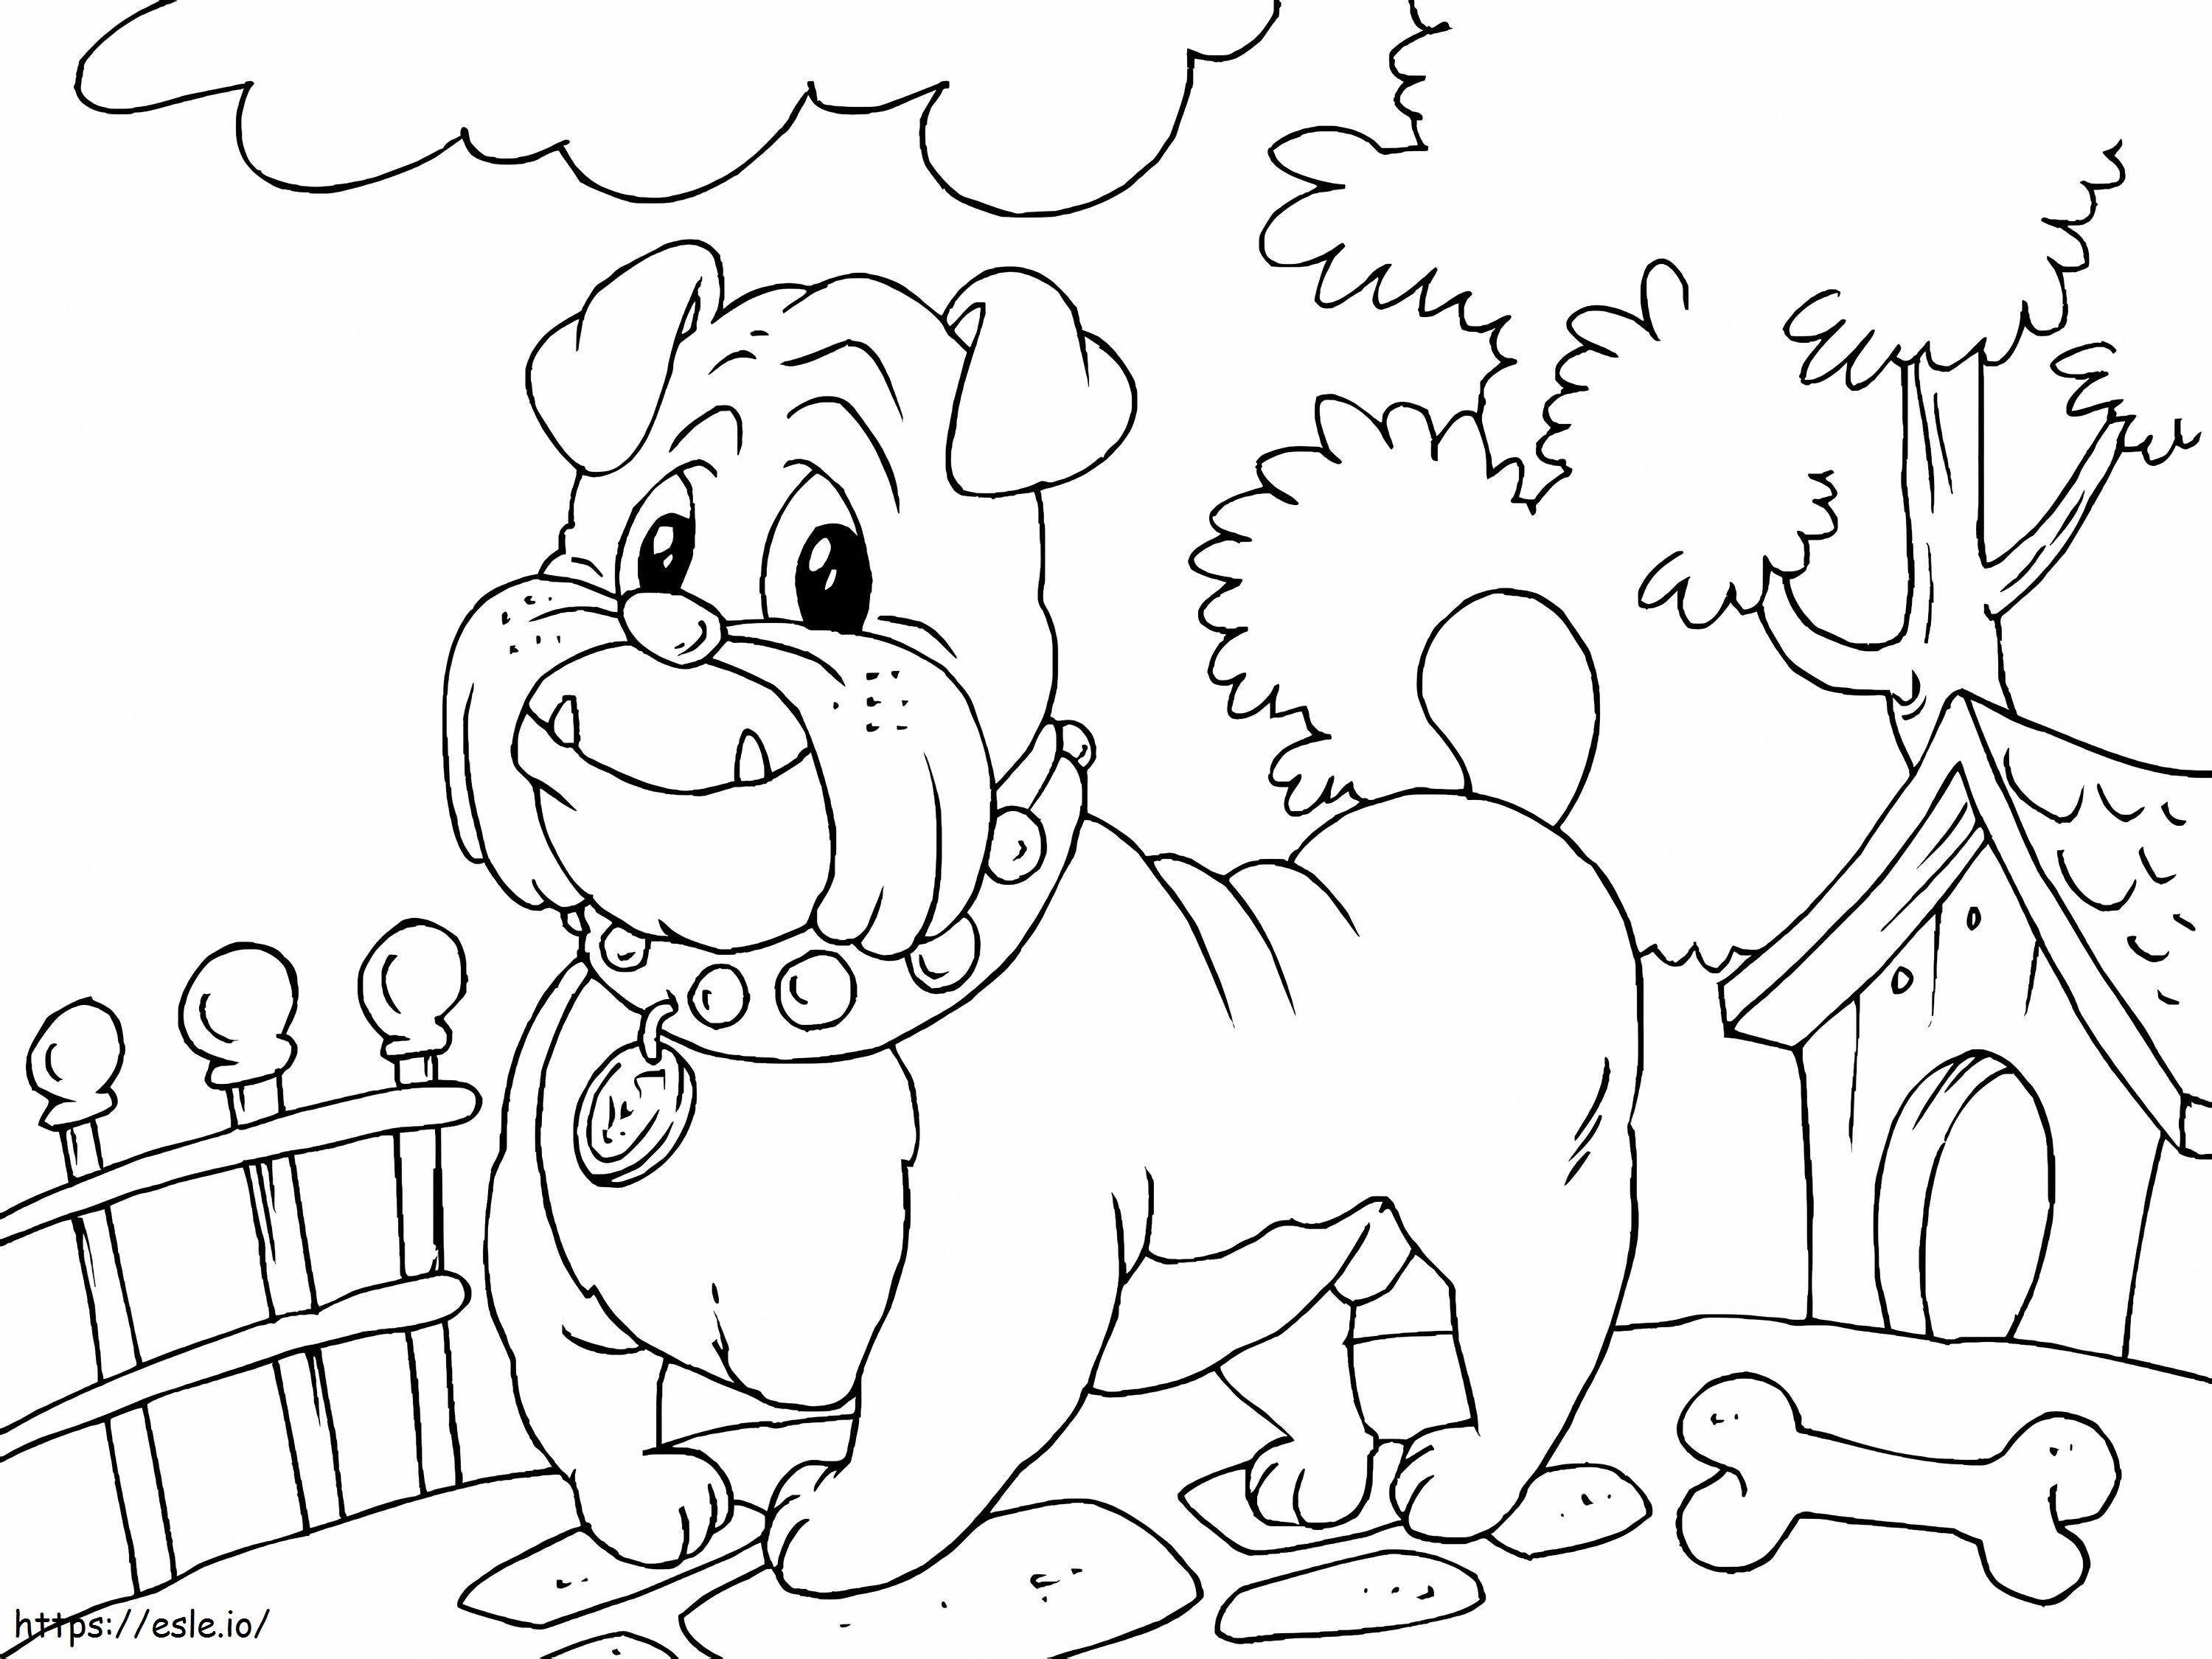 1528683898 Bulldoga4 coloring page